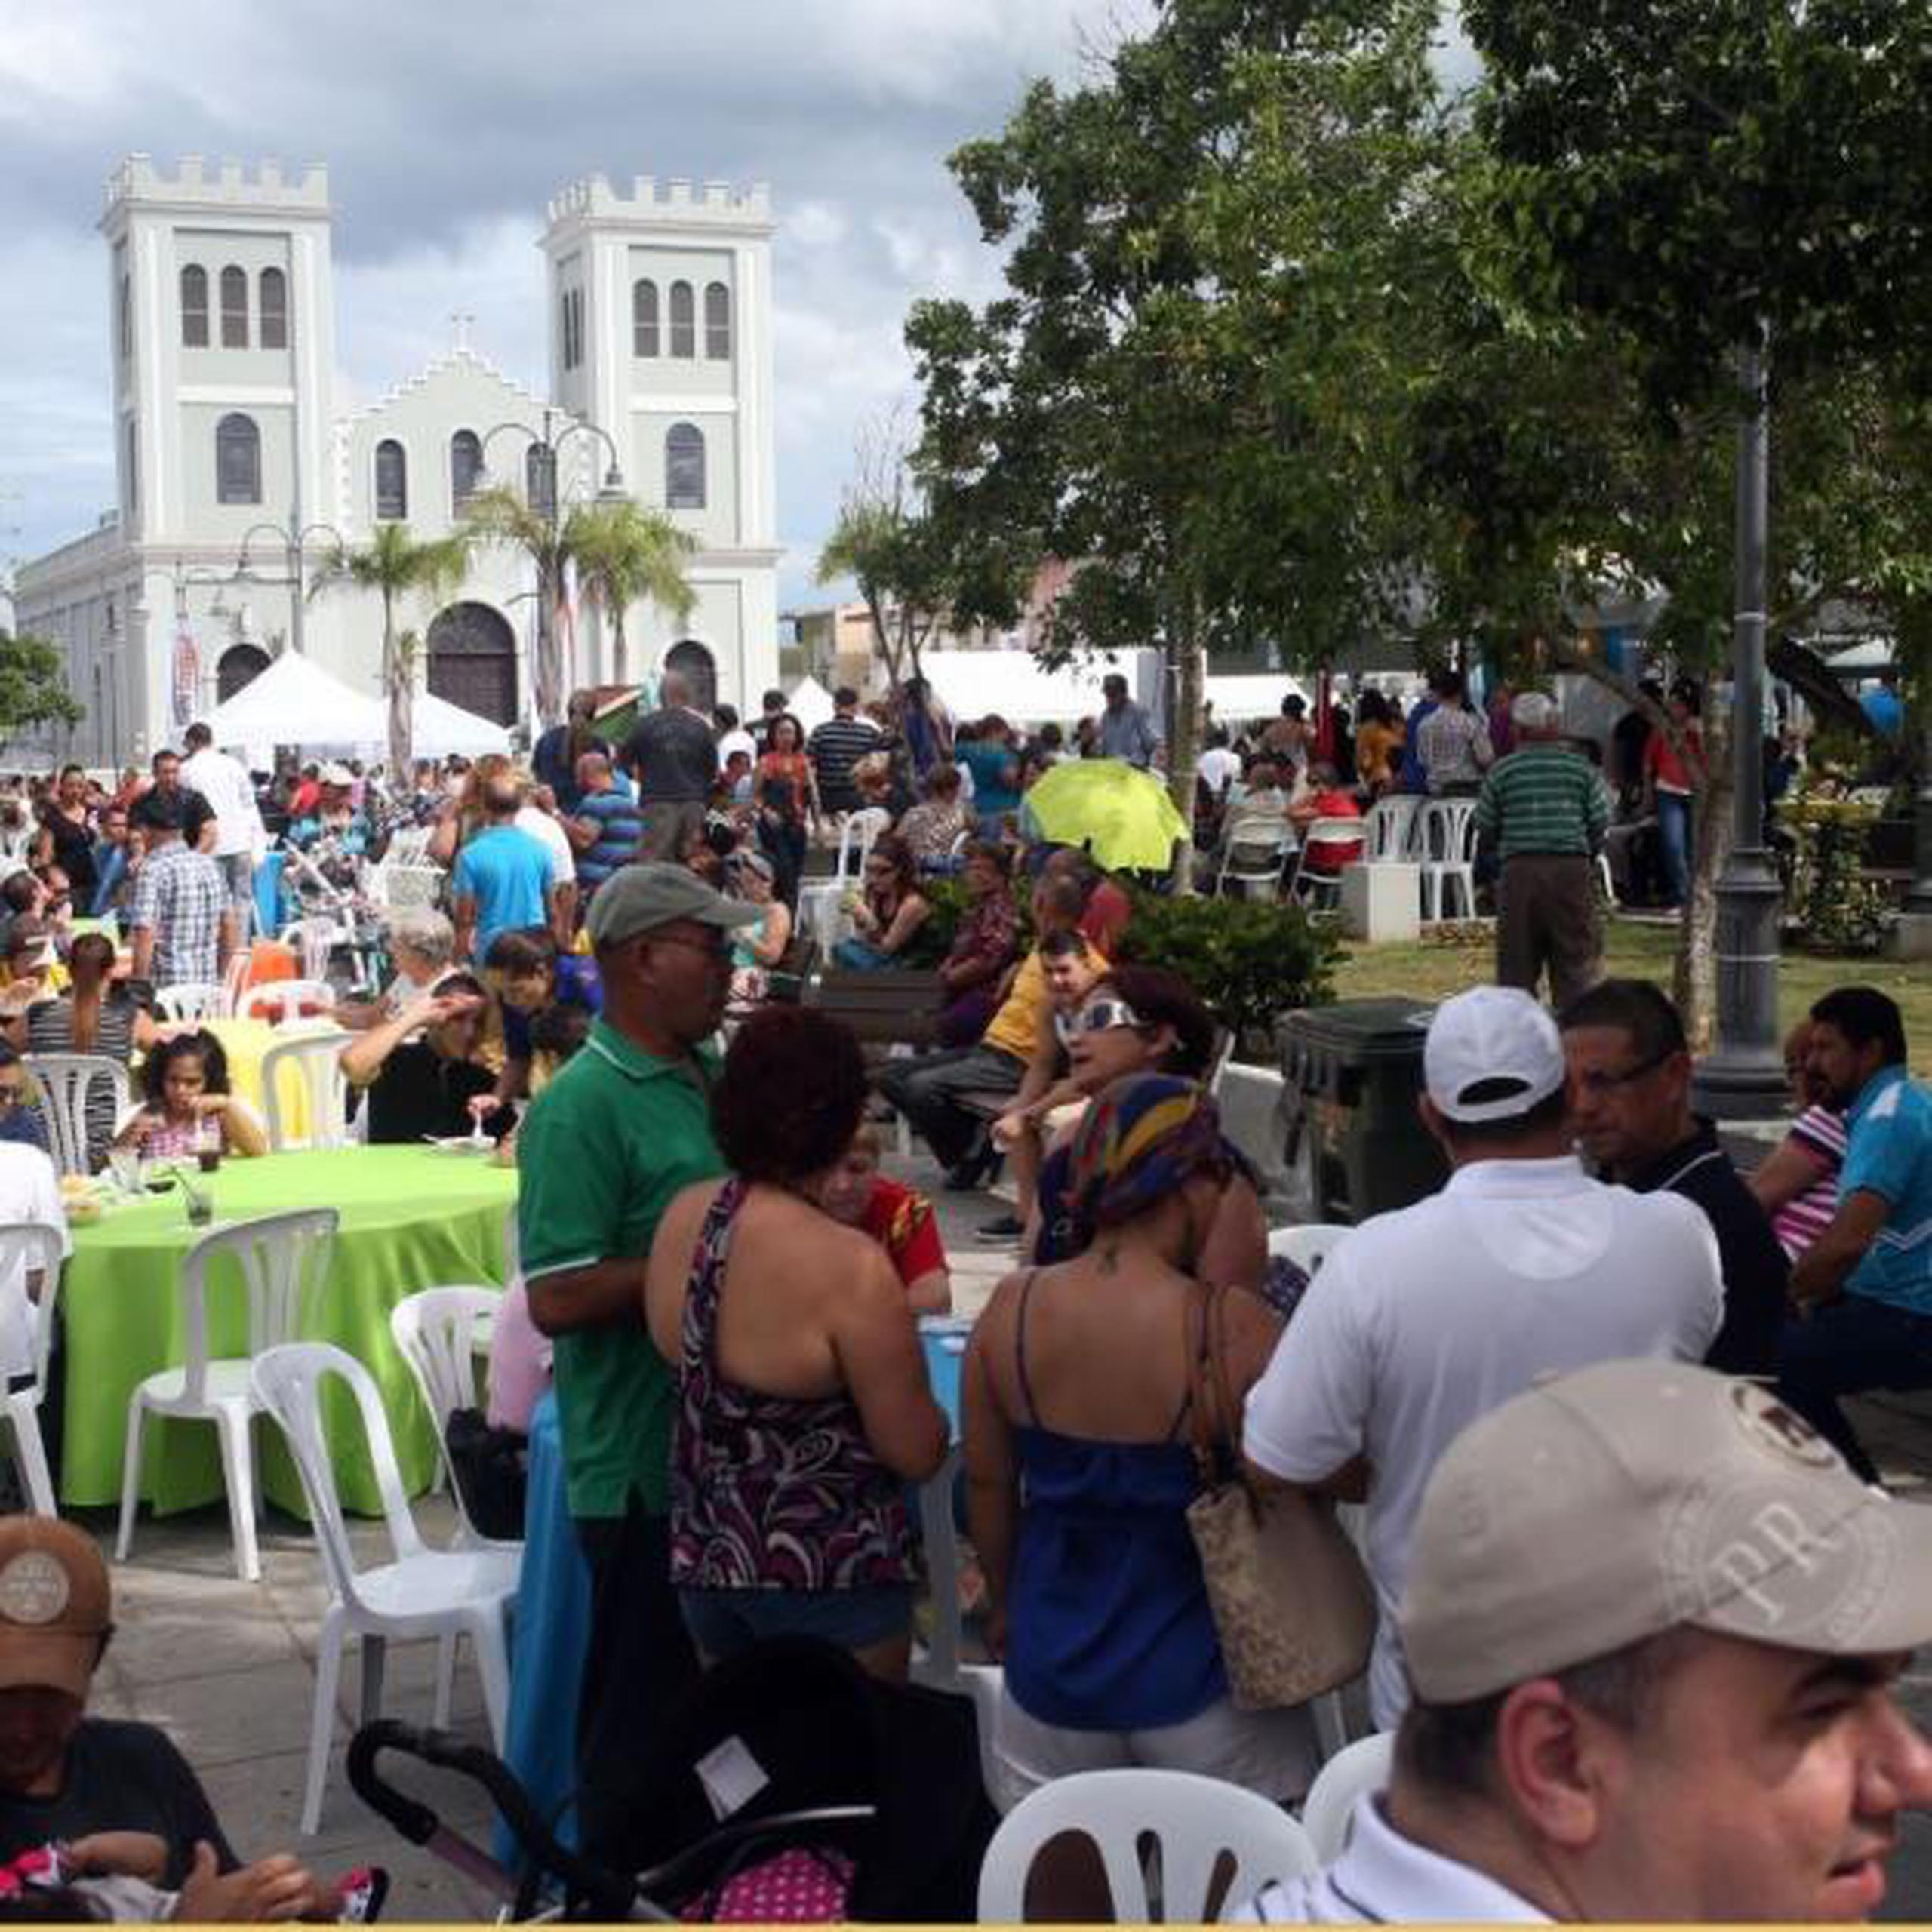 El sábado y el domingo, desde mediodía en la plaza pública de Isabela, se celebra el “Encuentro Cultural”, en conmemoración del 25 aniversario de La Casa de la Cultura Isabelina. (Archivo)